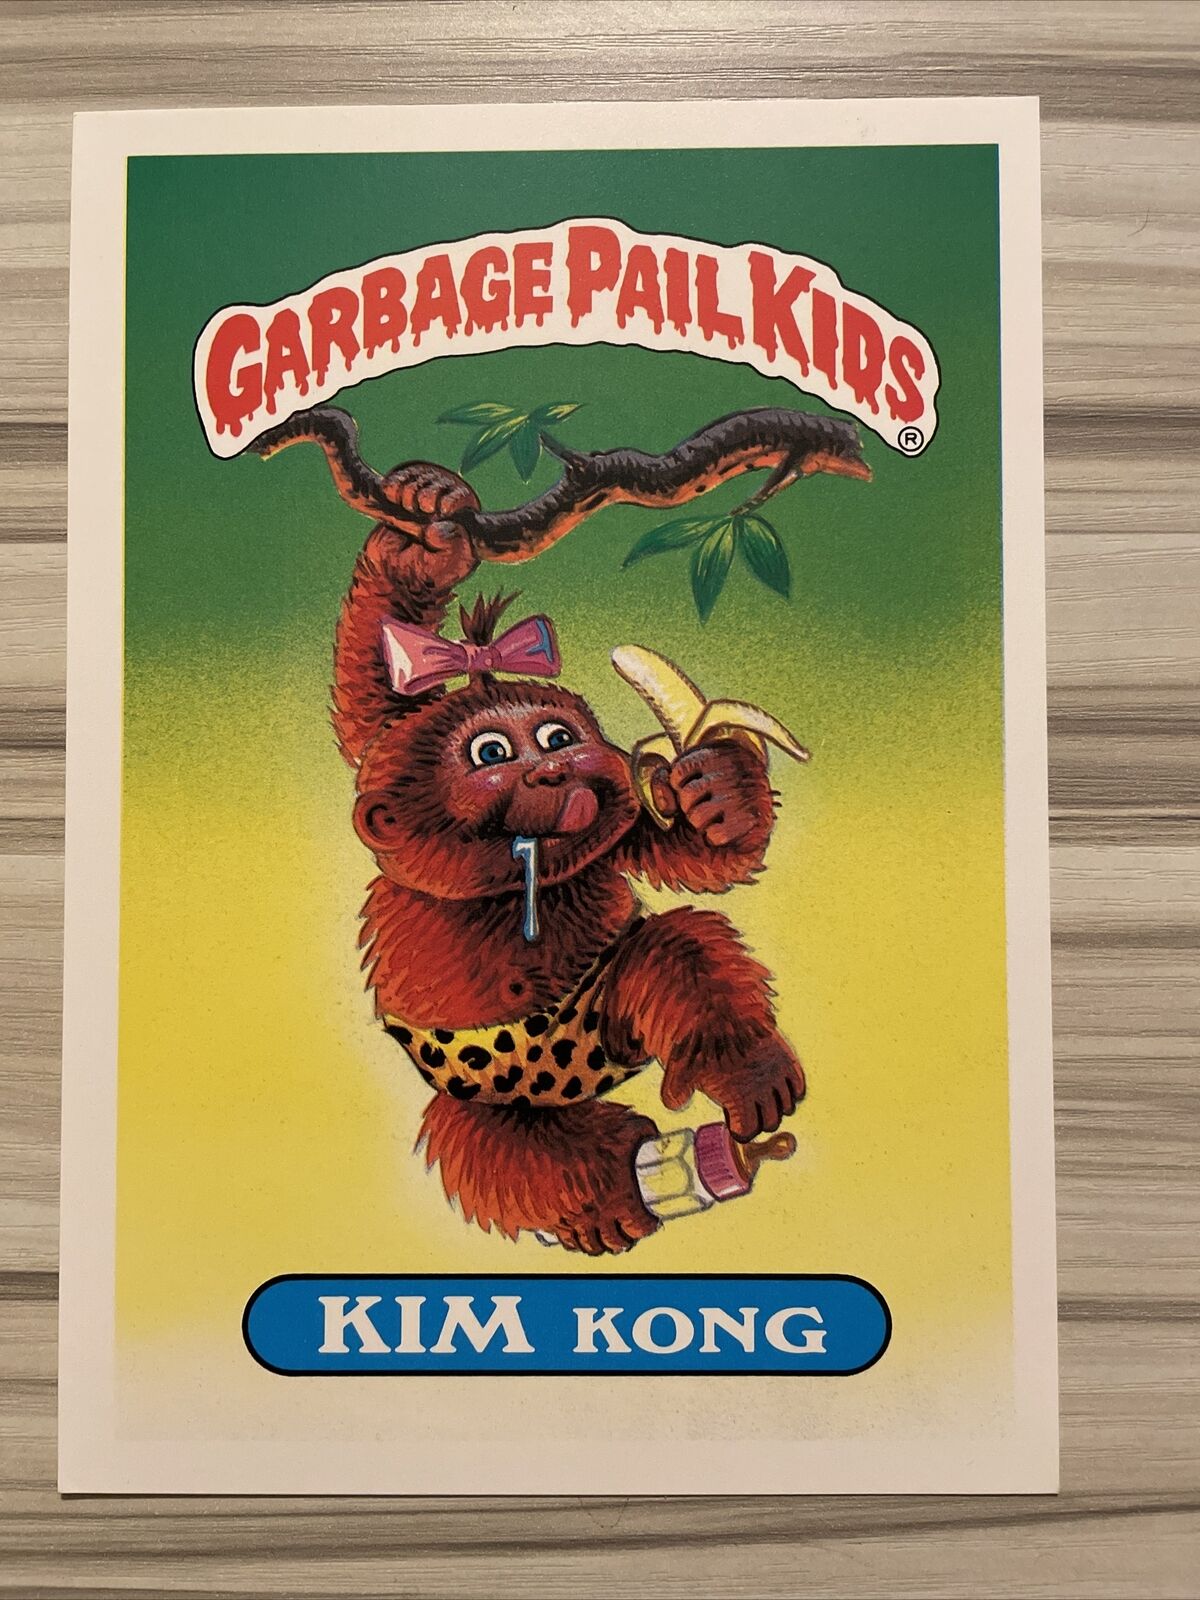 1986 Garbage Pail Kids “Kim Kong” GPK #34 Stickers 5x7 card